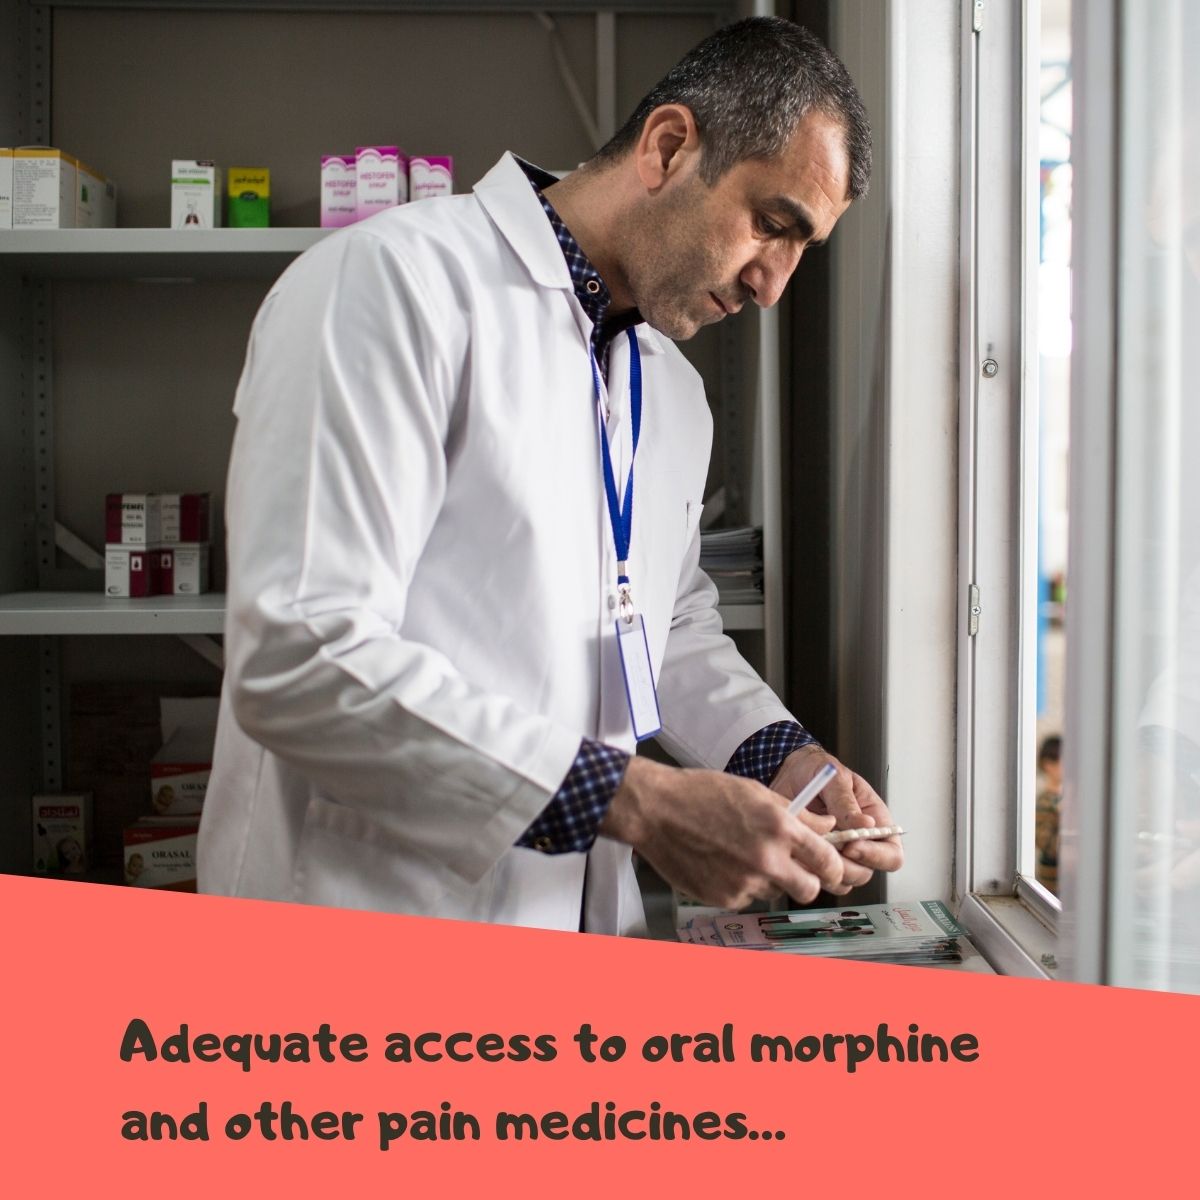 إتاحة إمكانية كافية للحصول على أدوية الألم لعلاج آلام السرطان